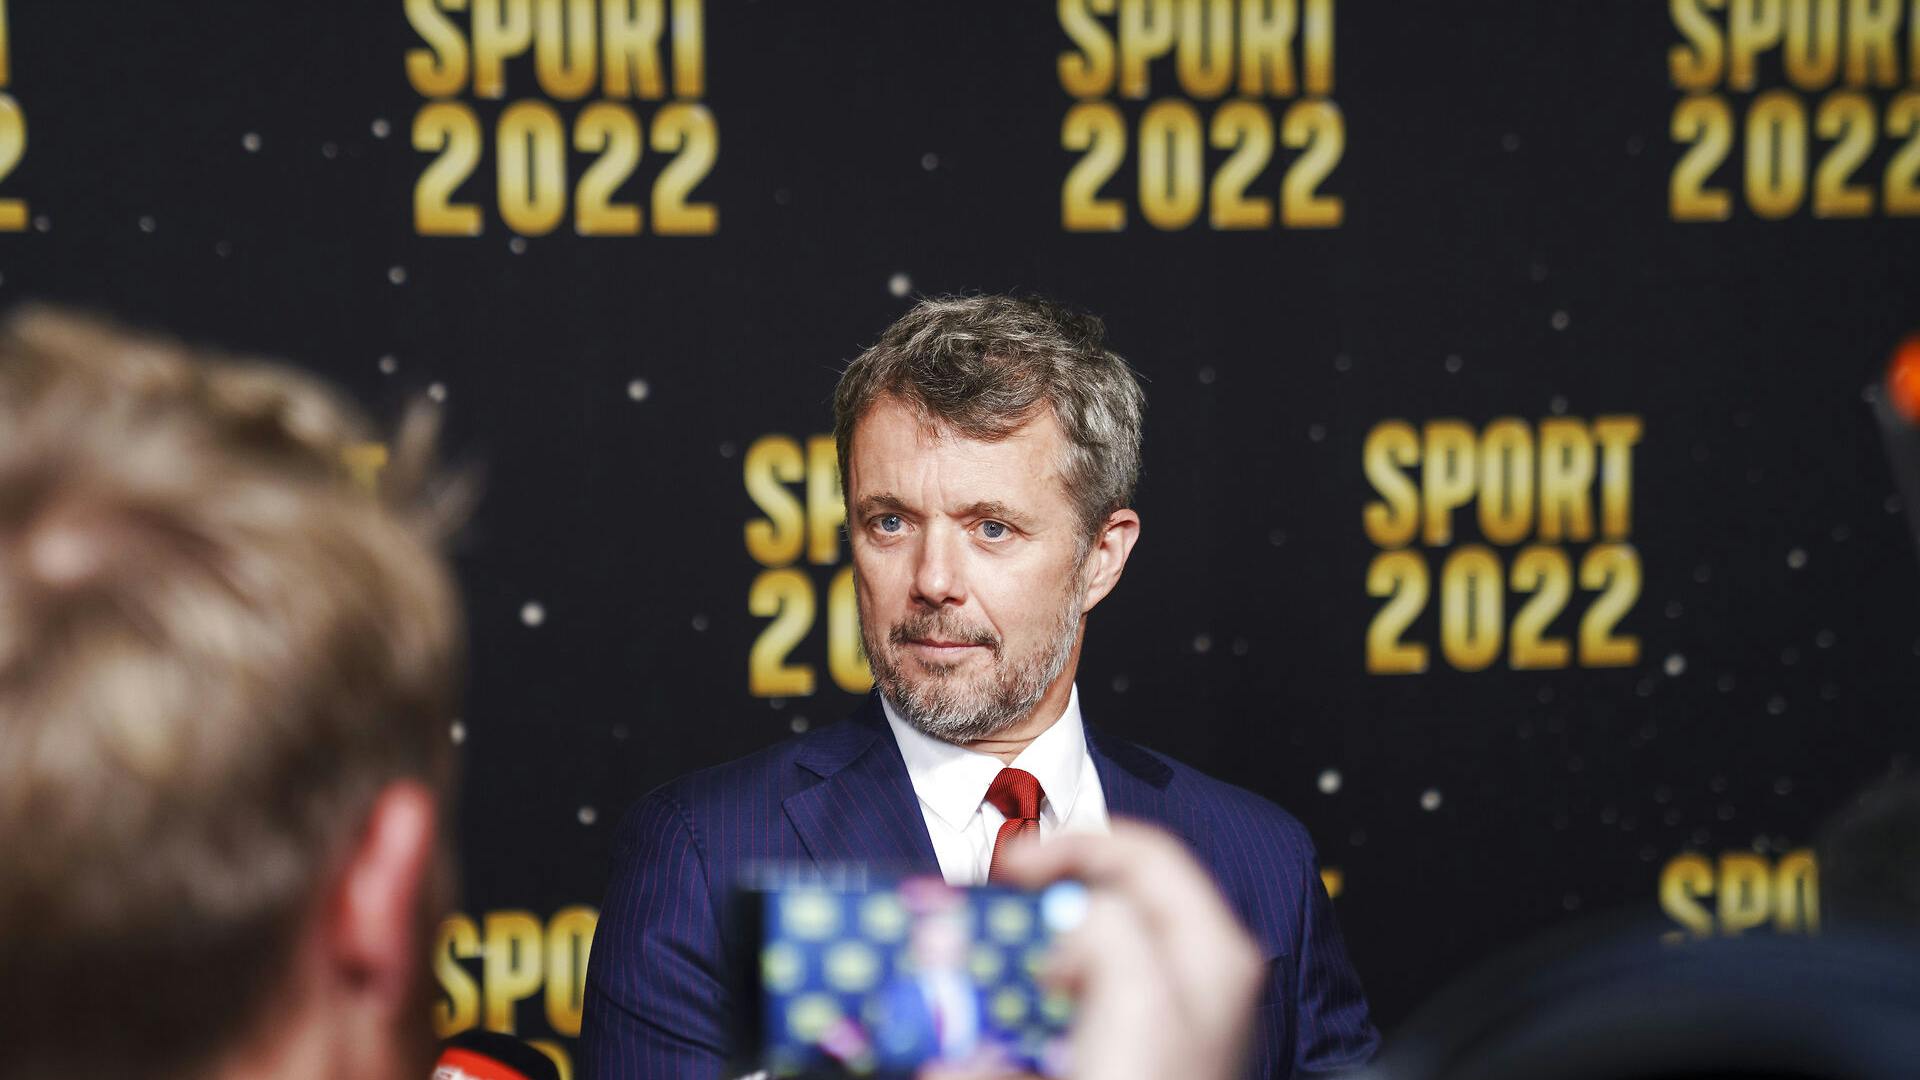 Kronprins Frederik var i sit festlige hjørne, da han deltog i "Sport 2022" lørdag i Boxen i Herning.